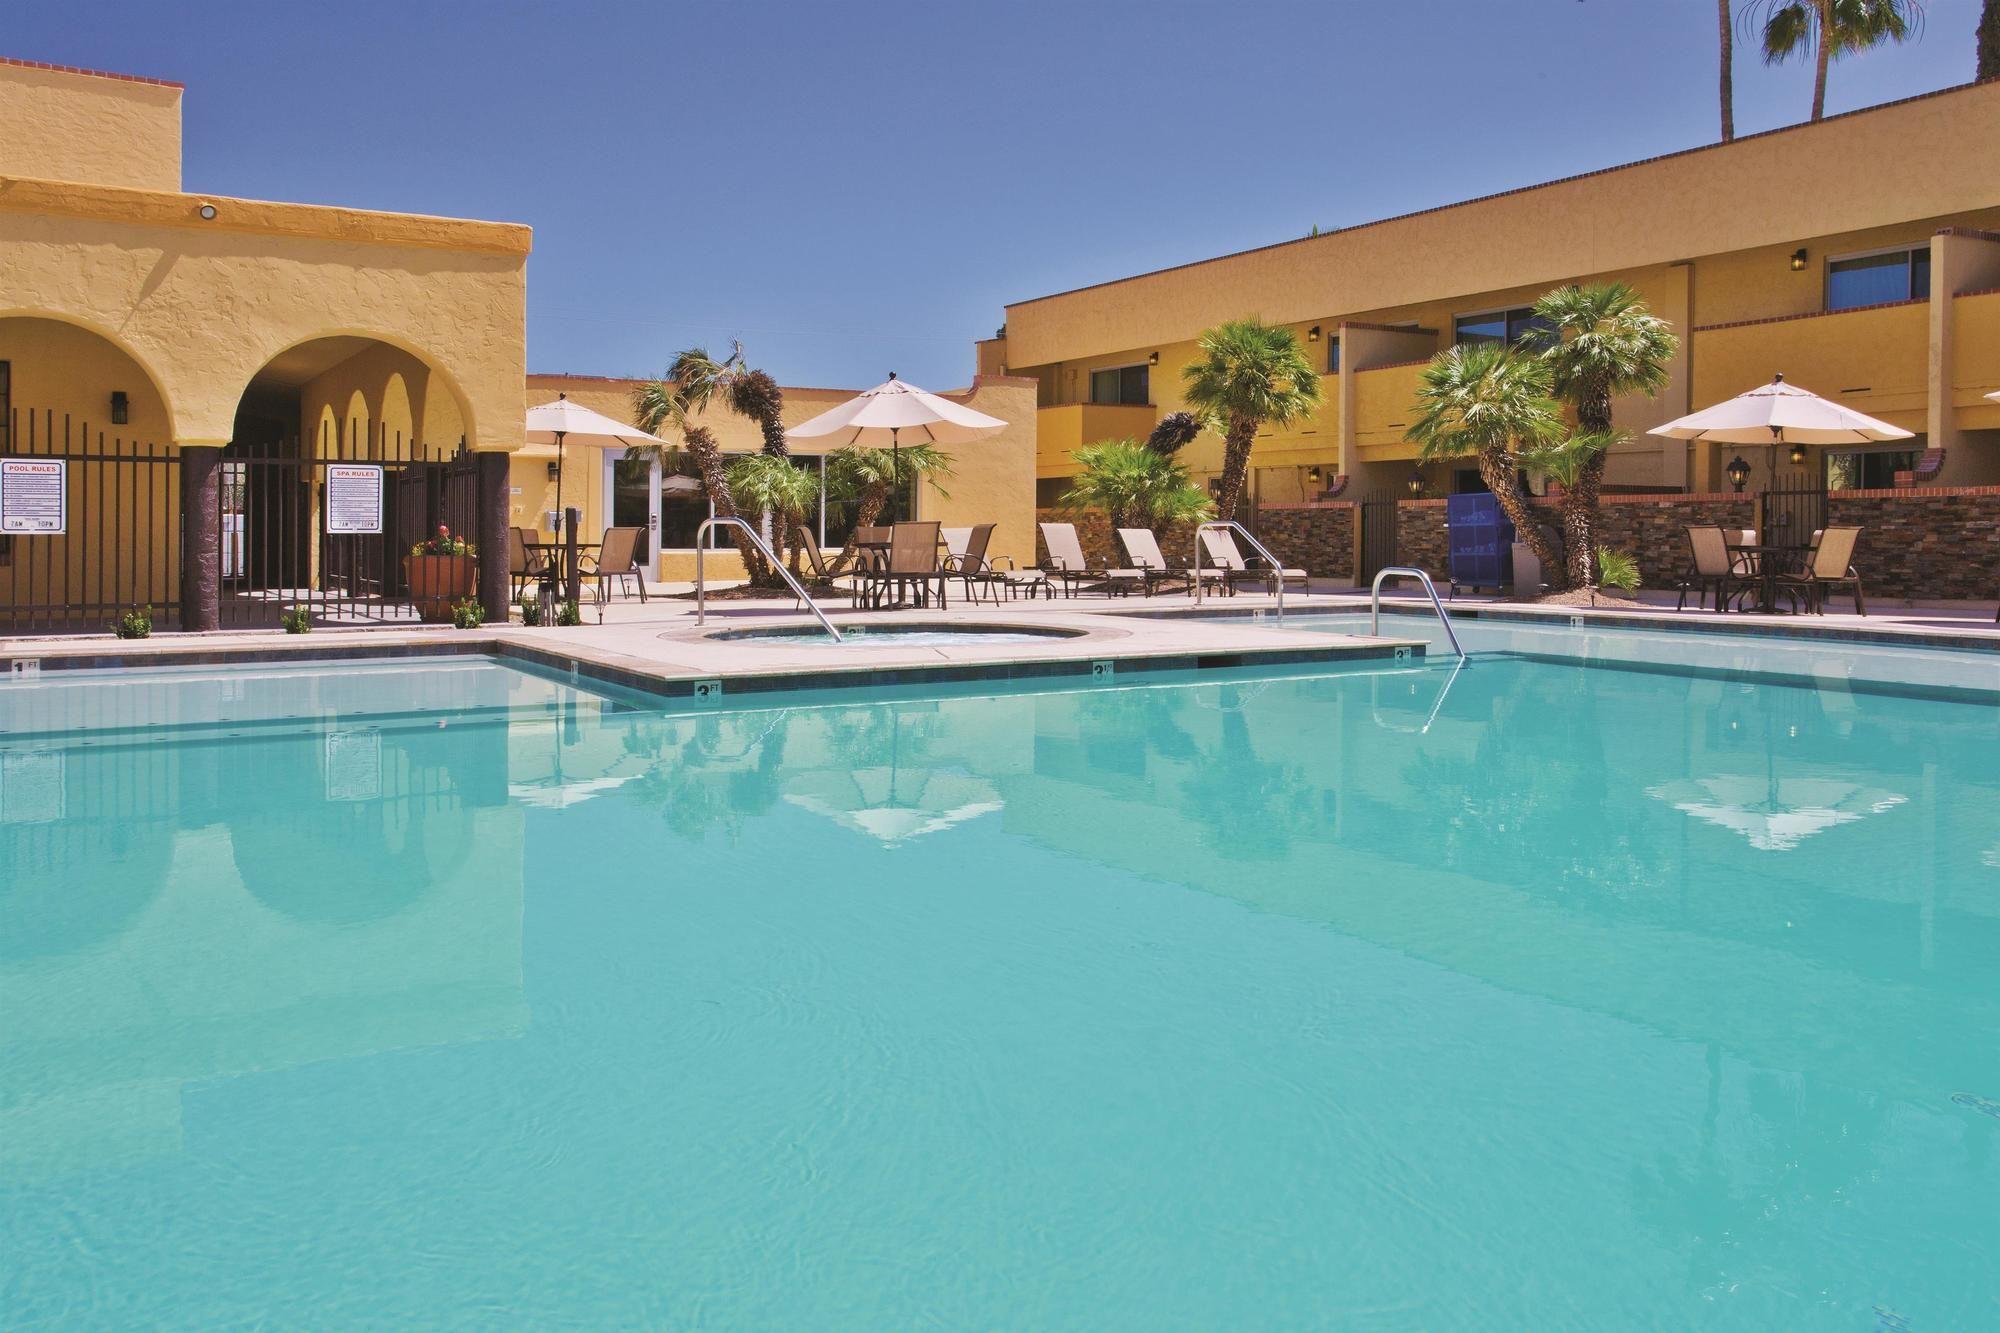 Spa La Quinta Inn & Suites Tucson - Reid Park